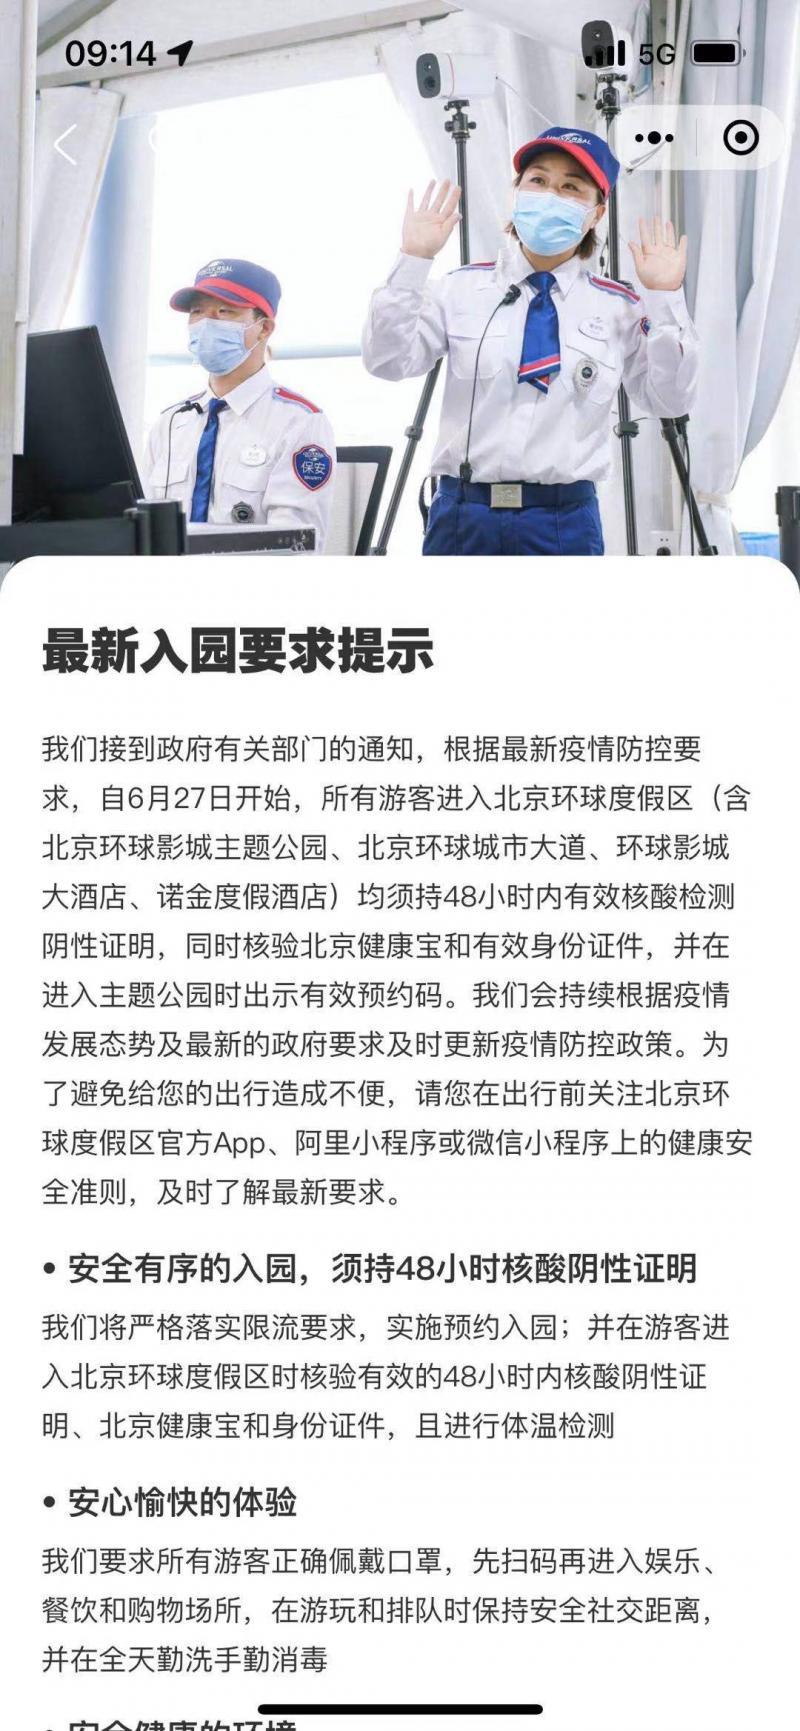 北京环球度假区防控措施调整：入园须持48小时核酸证明